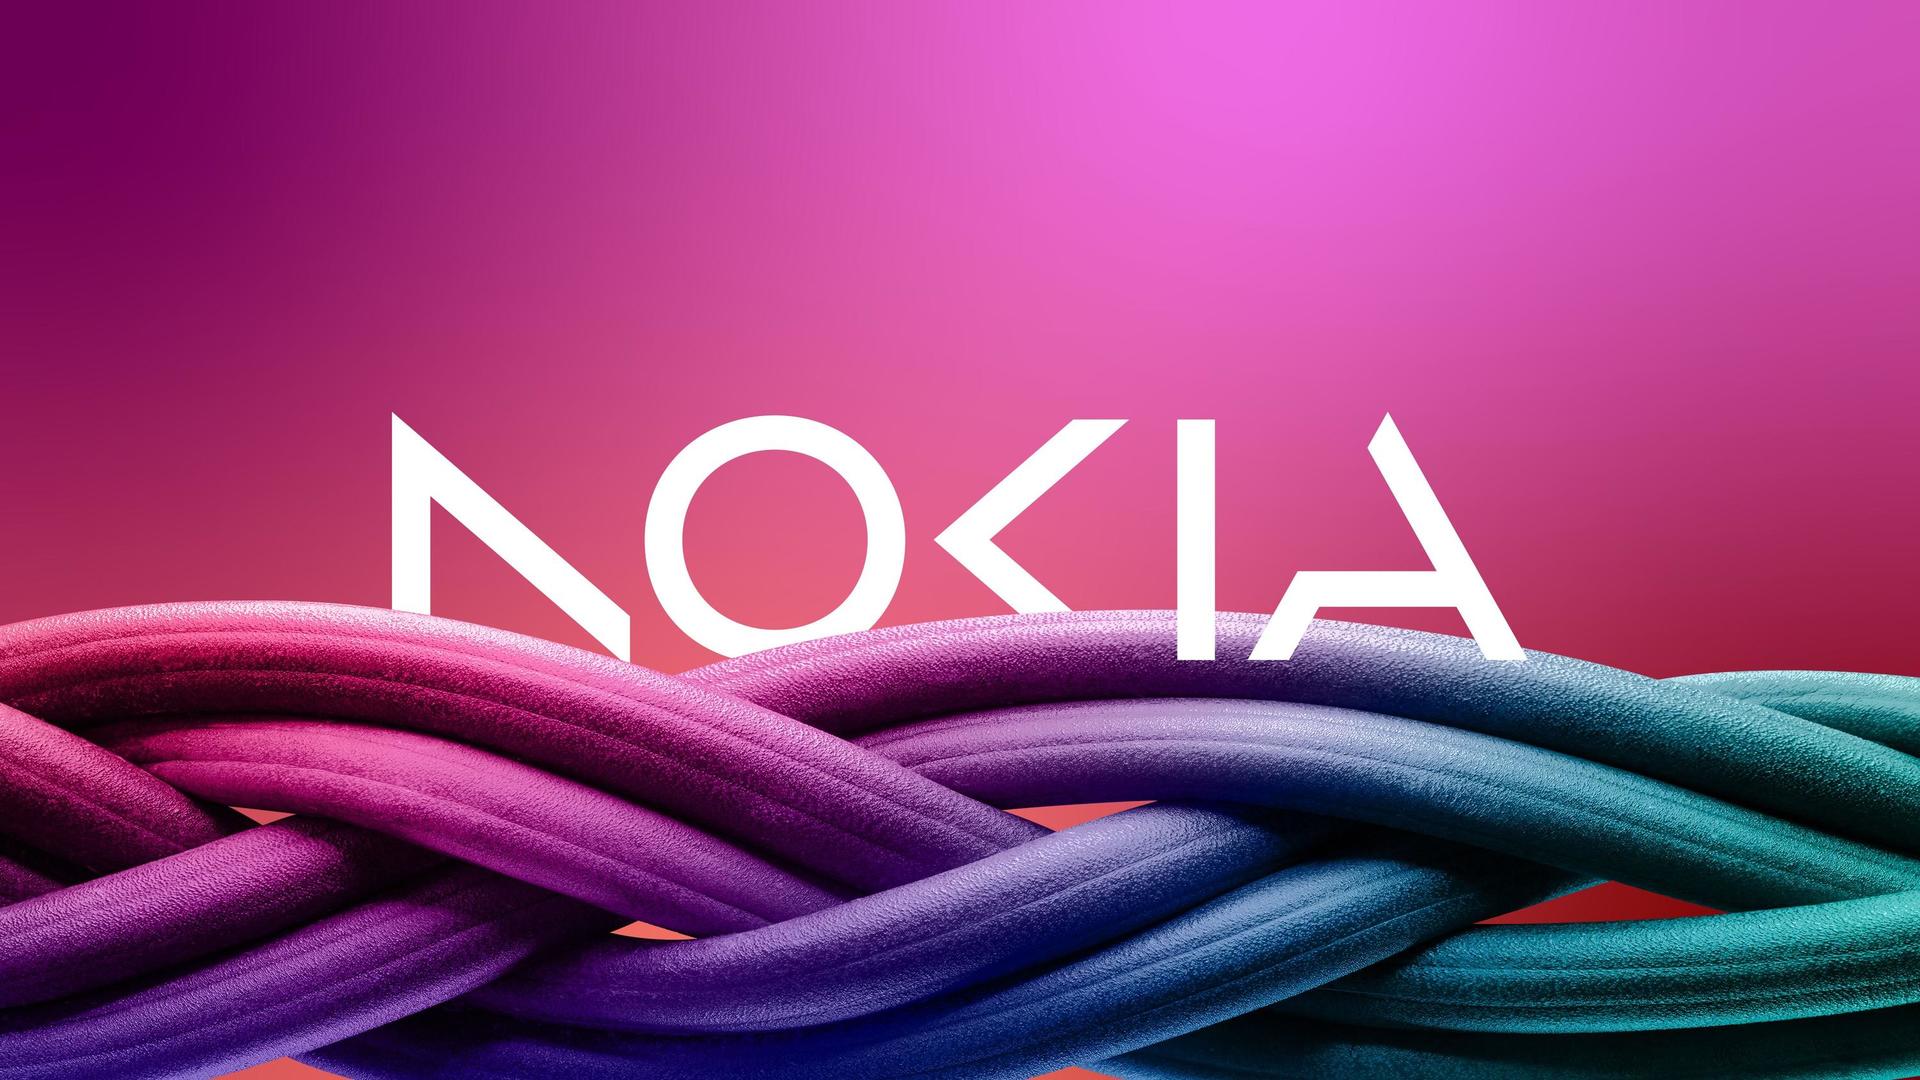 Nokia ima novi logo i twitteraši ne prestaju da ga ismijavaju